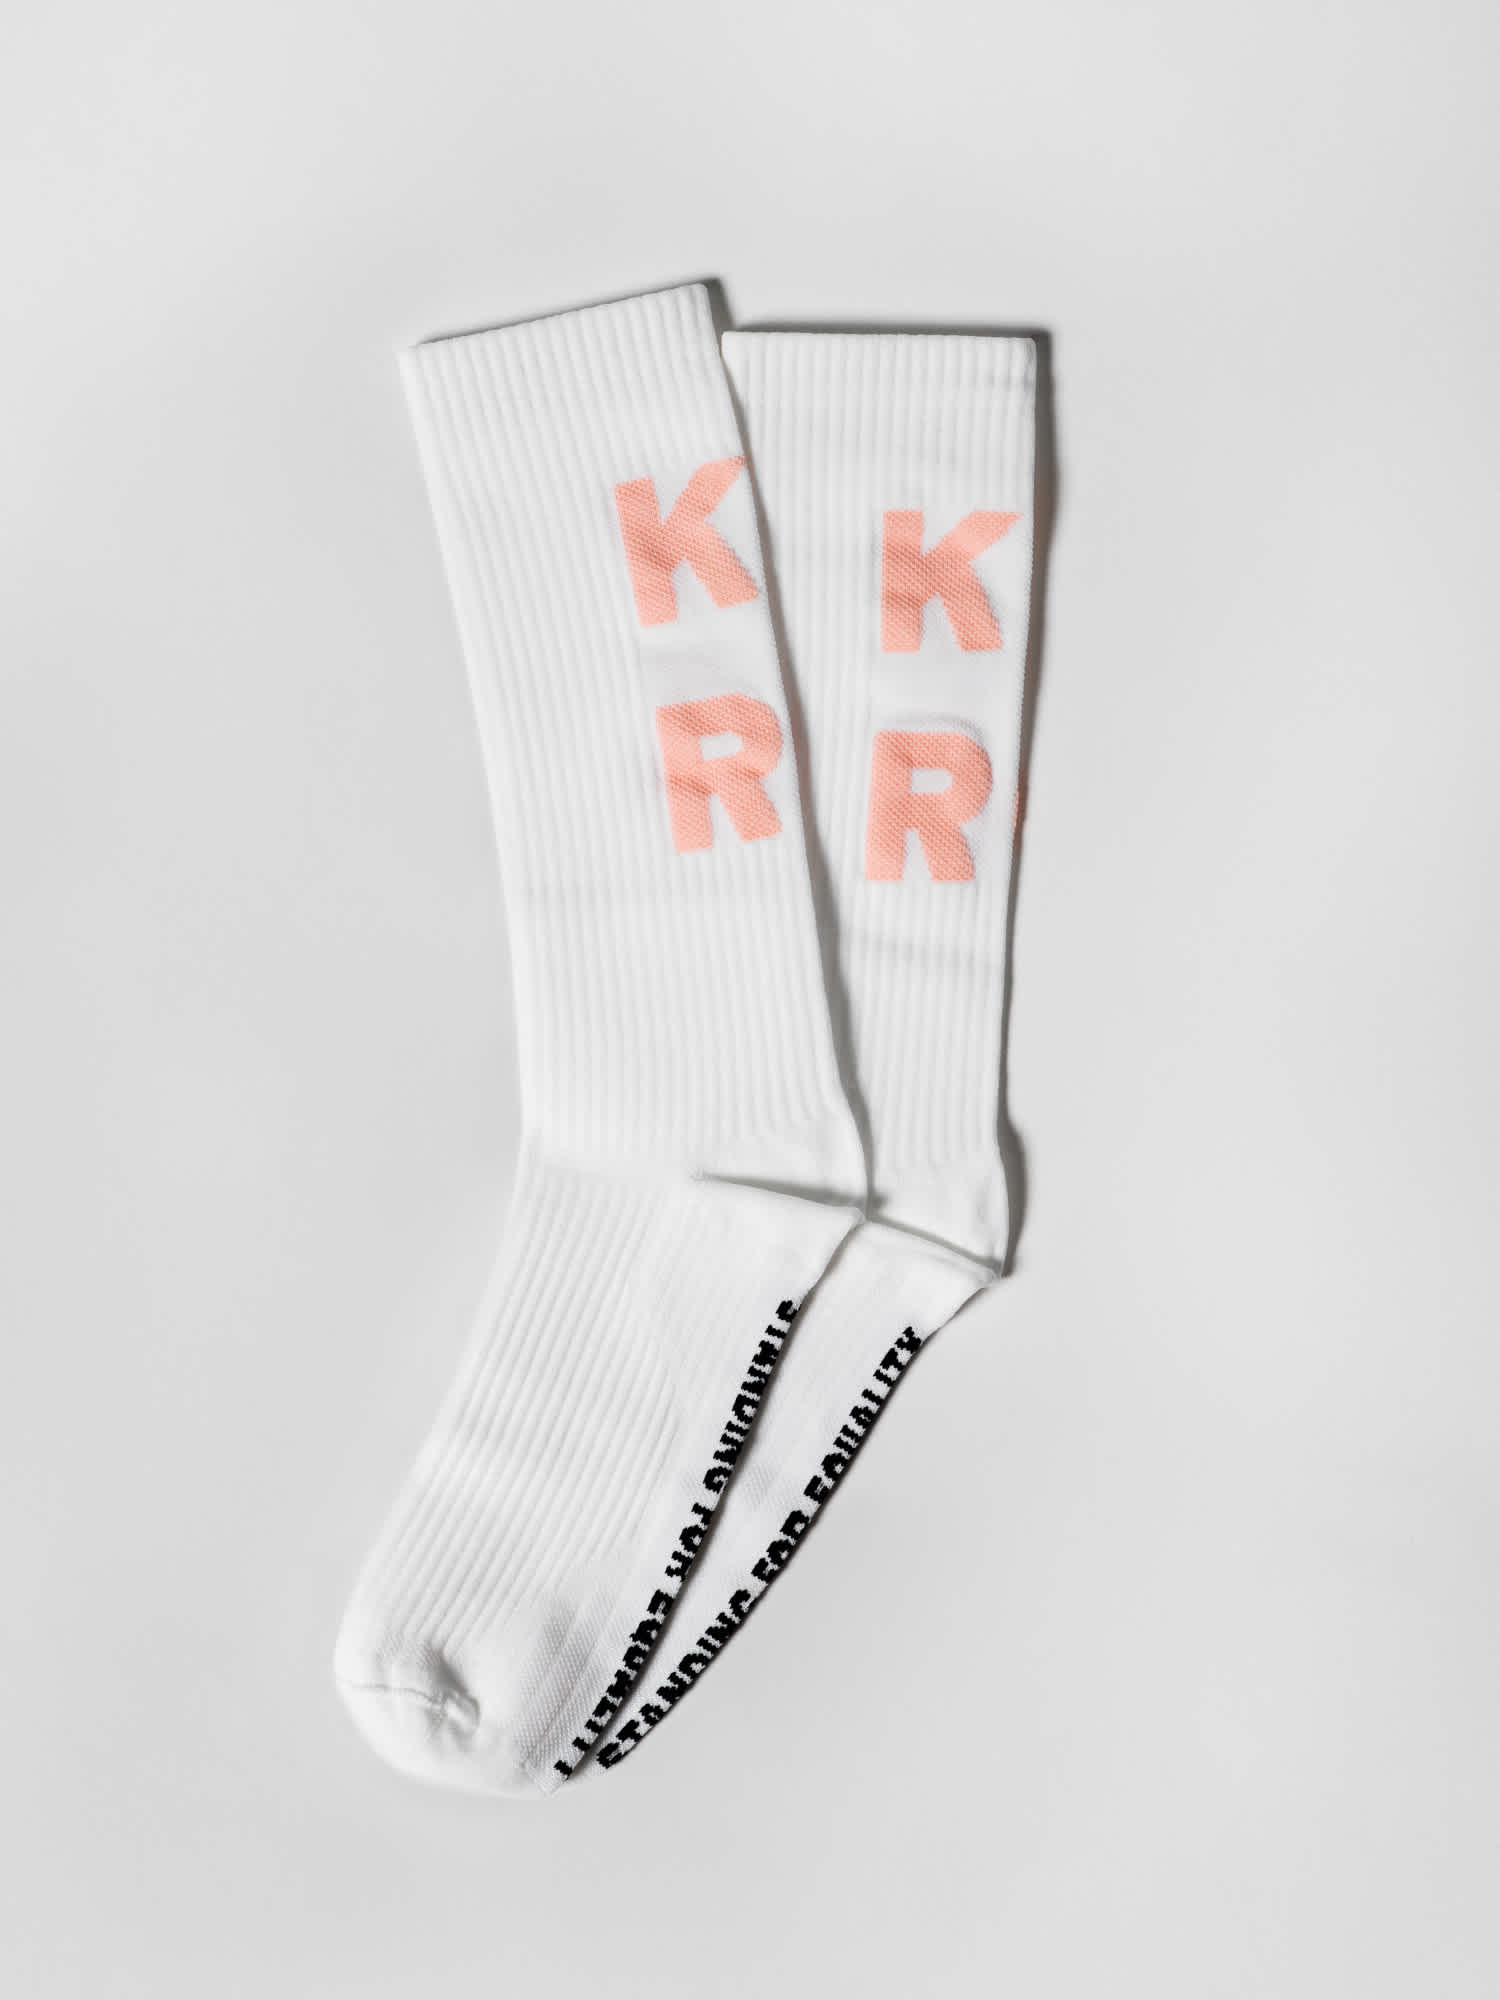 Tuotekuva: valkoiset Sidoste-sukat pinkillä Kyrö-tekstillä.